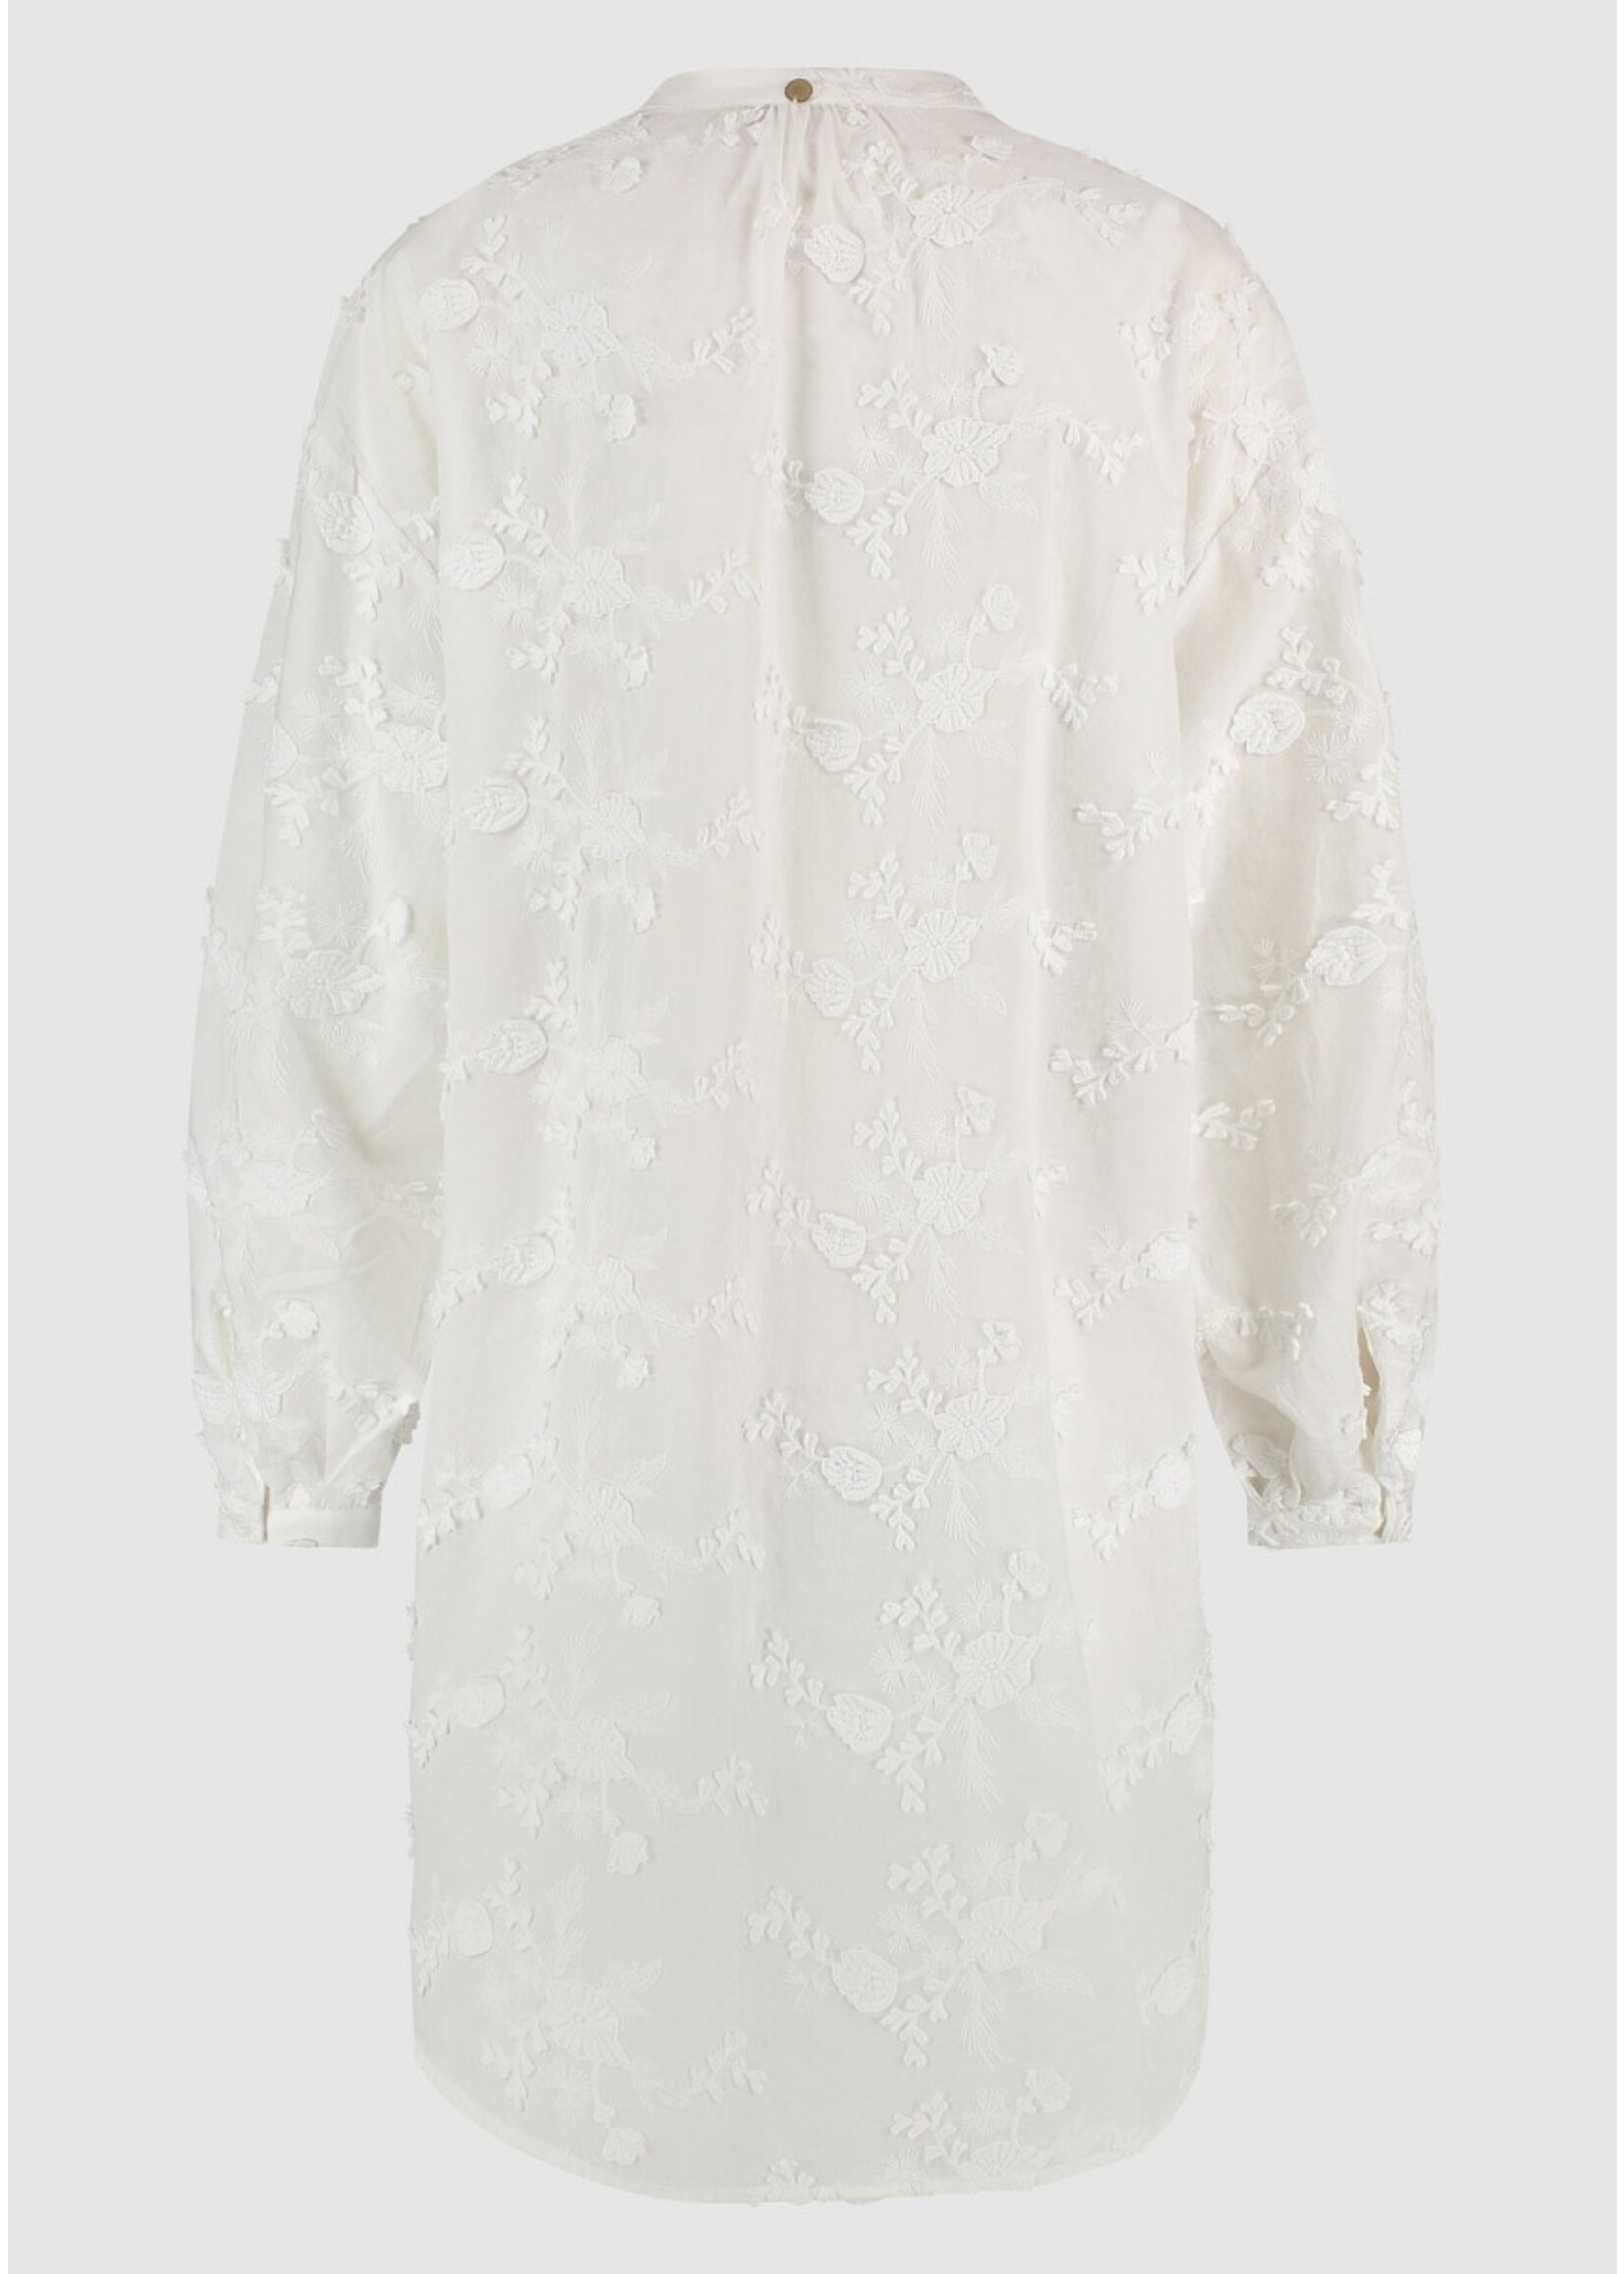 CIRCLE OF TRUST NOVI DRESS bright white